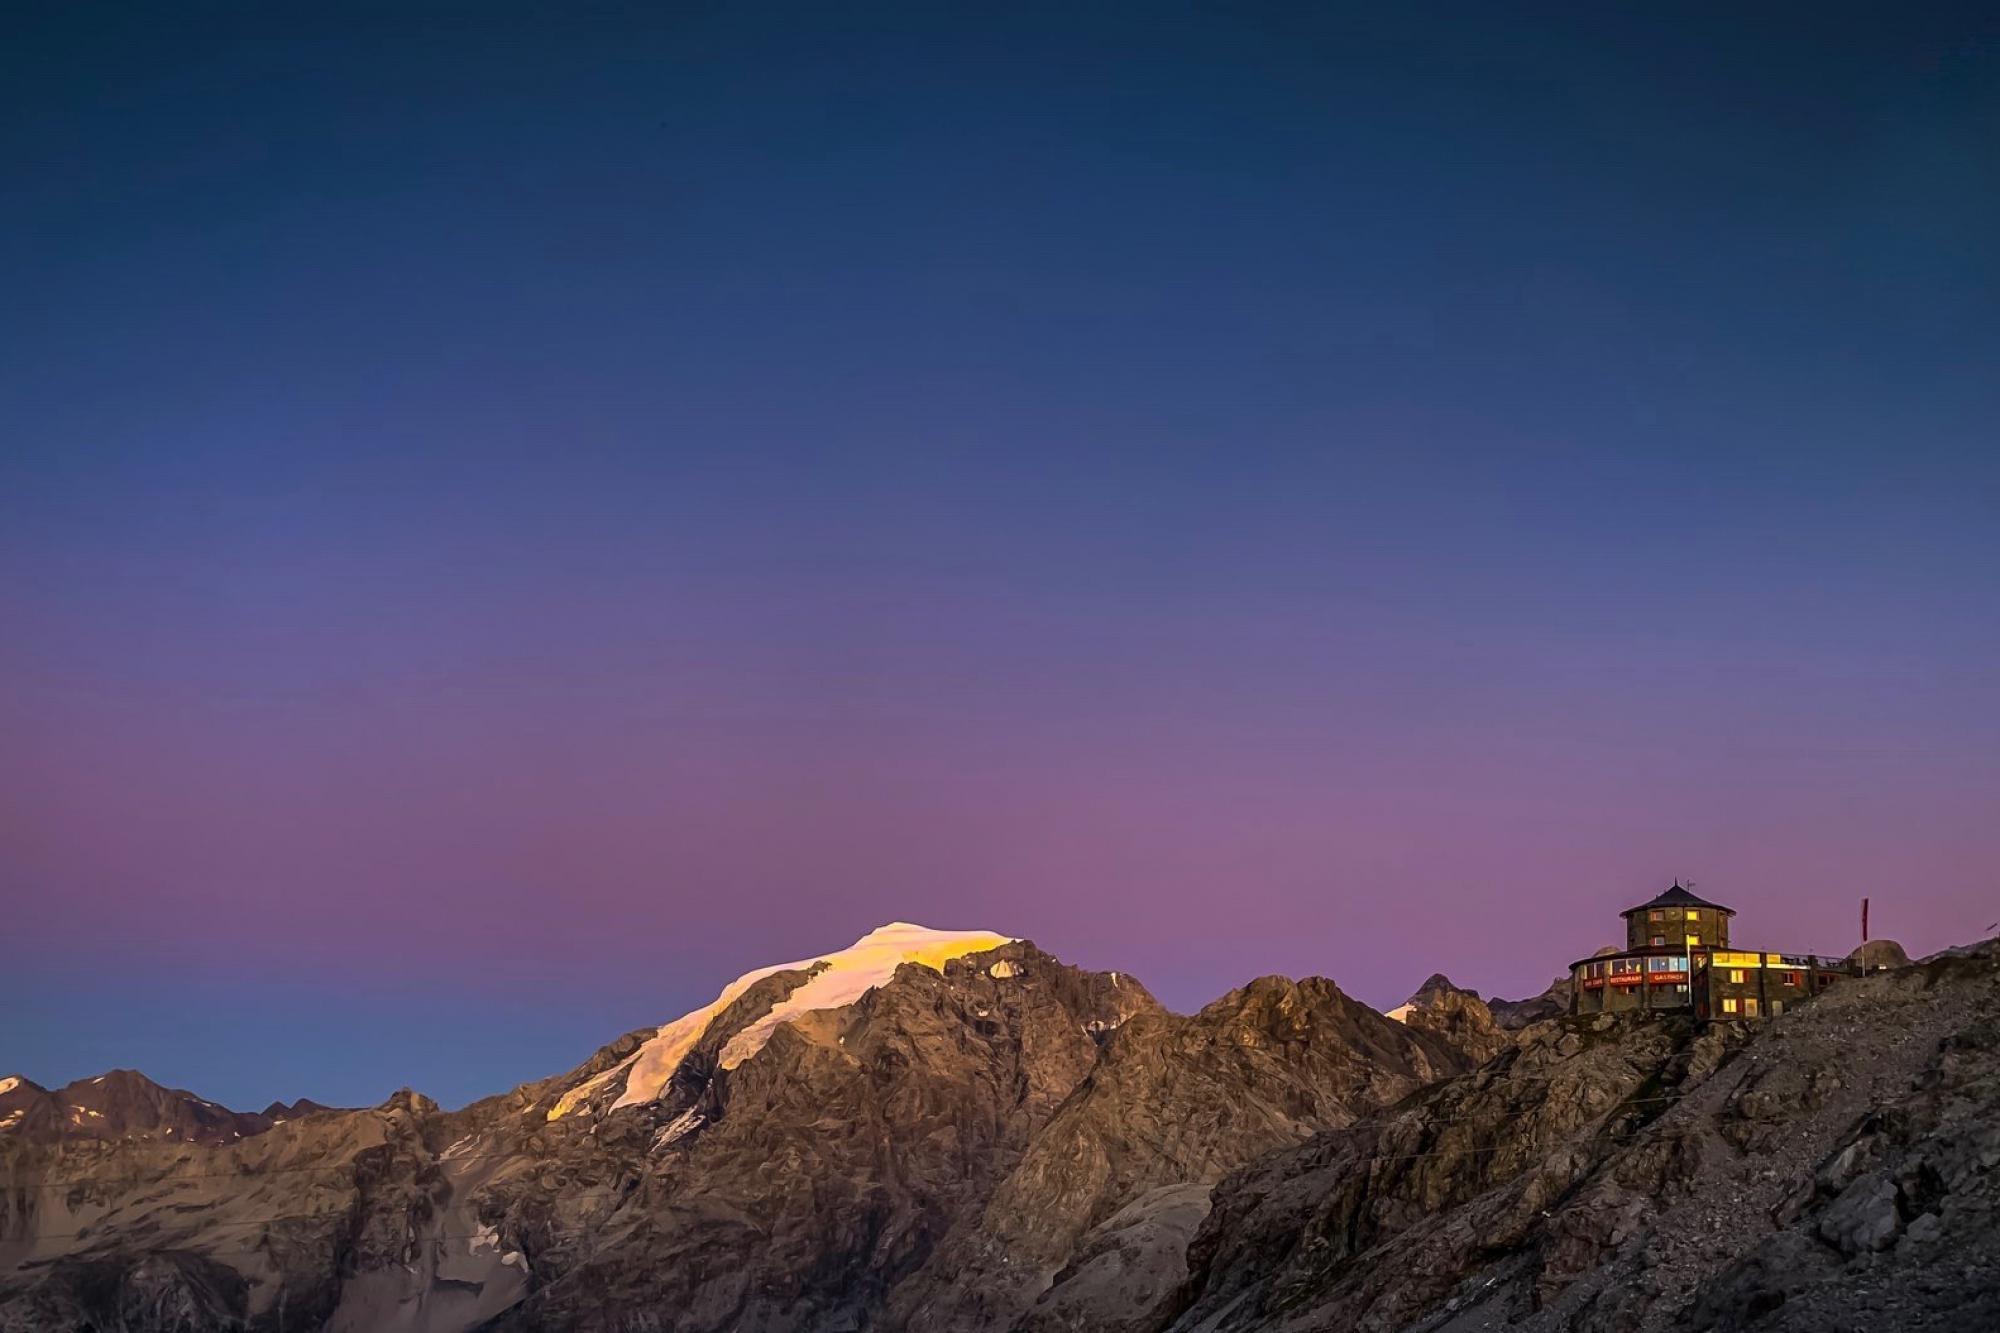 Panorama Stilfser Joch - Alpenhotel Tibet Hütte